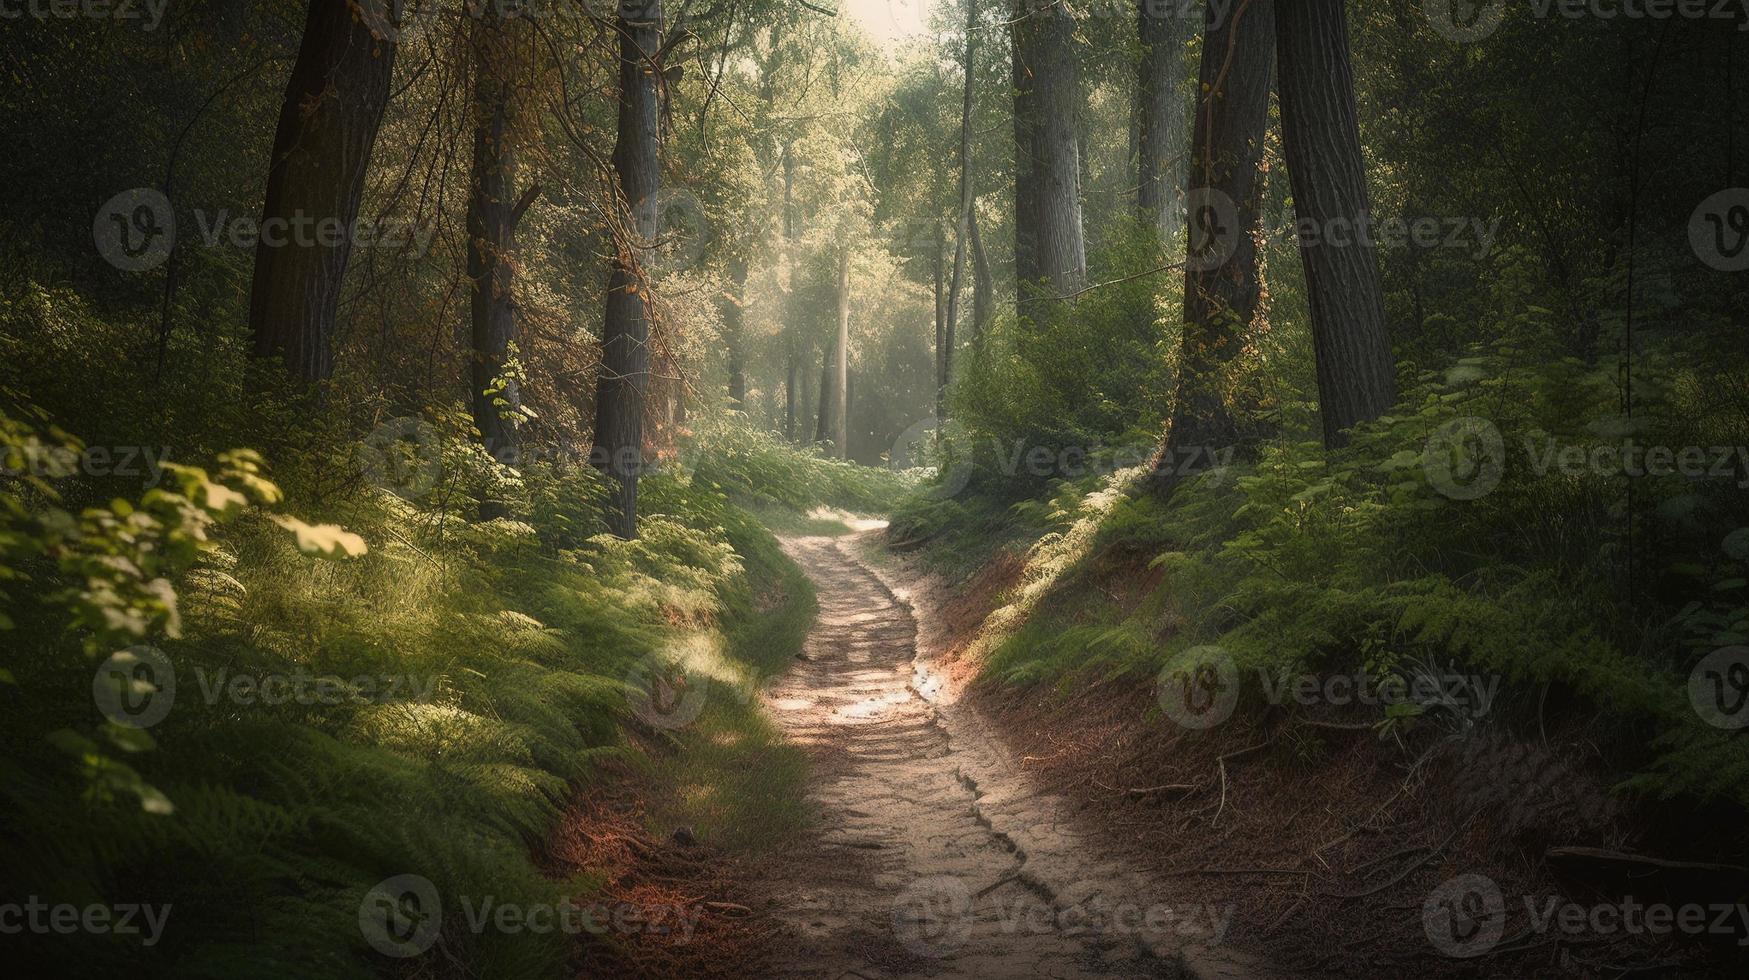 dimmig väg genom de skog ,solnedgång i en mörk skog med strålar av ljus godkänd genom de träd foto